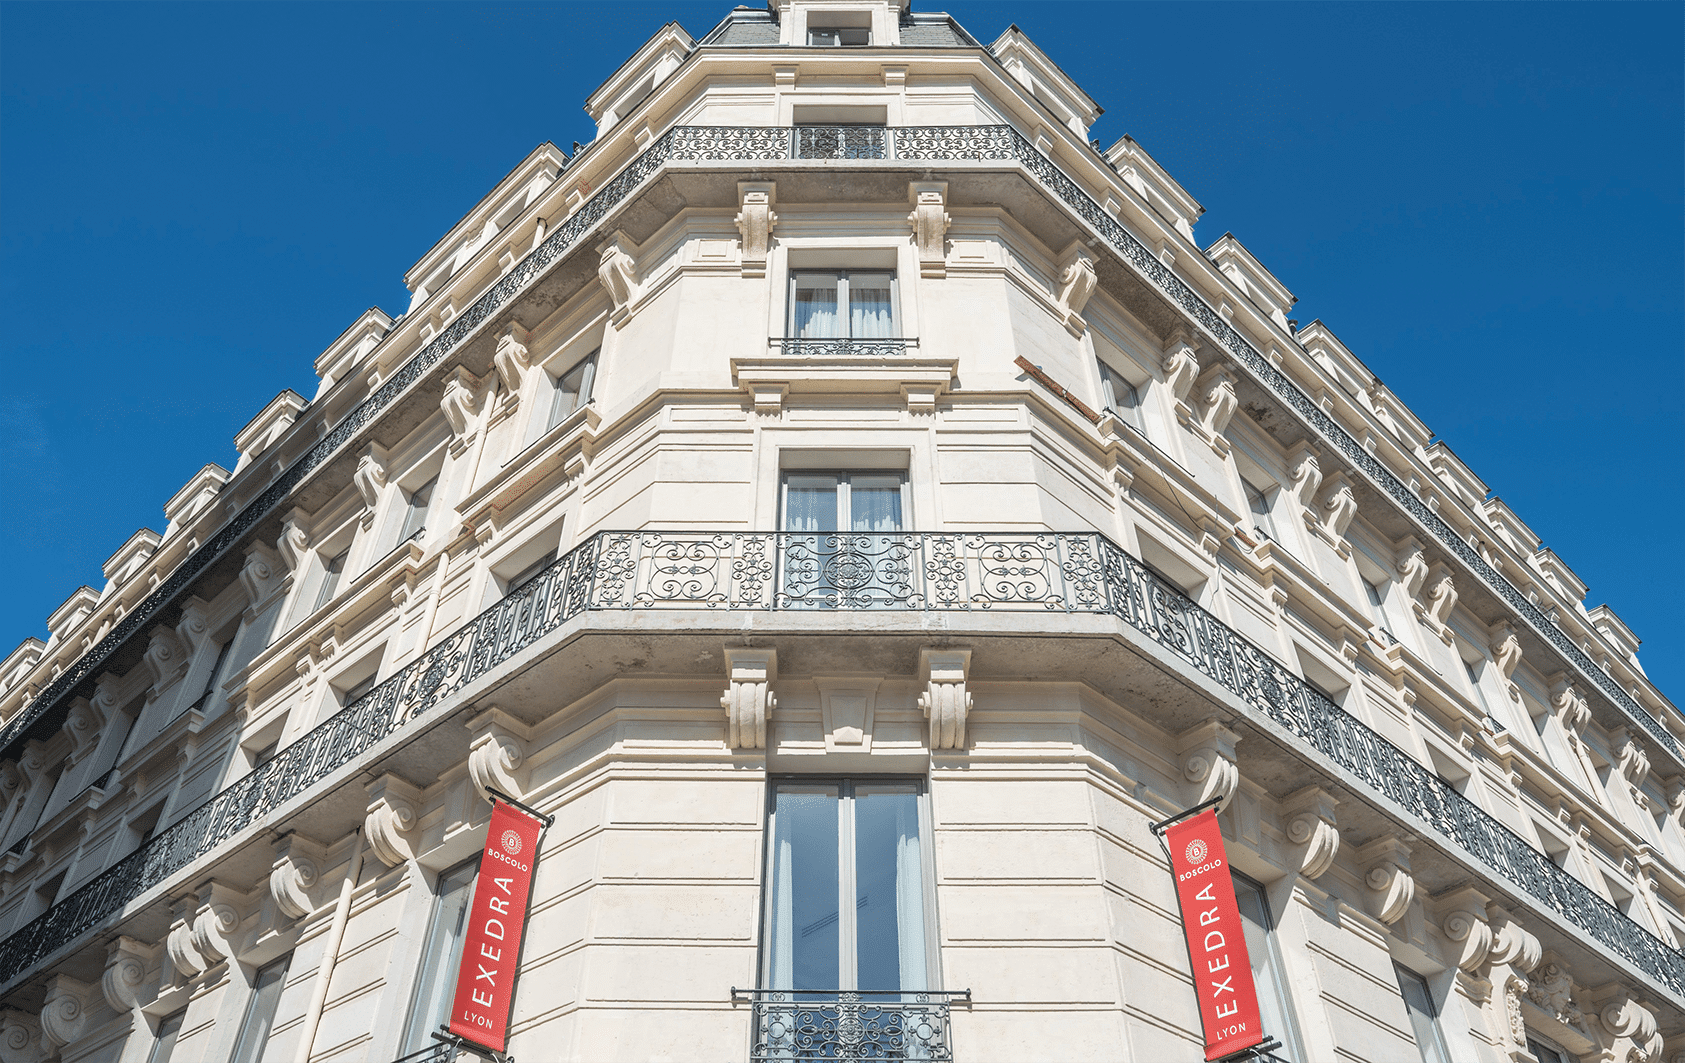 BOSCOLO HOTEL & SPA, c'est l'assemblement du raffinement italien et du classicisme français.